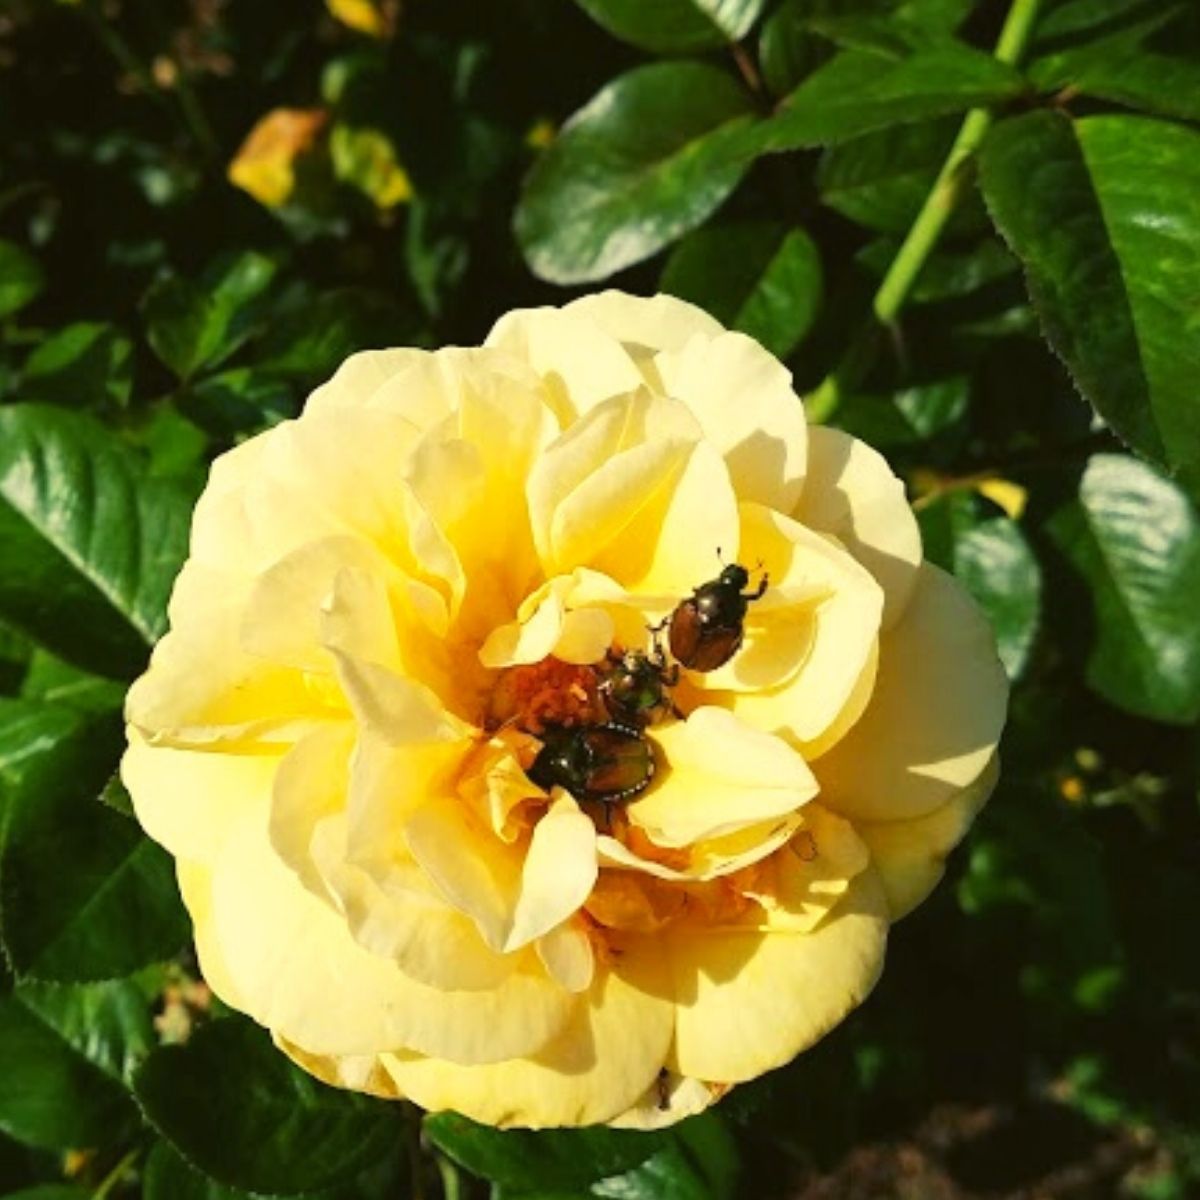 japanese beetles on yellow rose